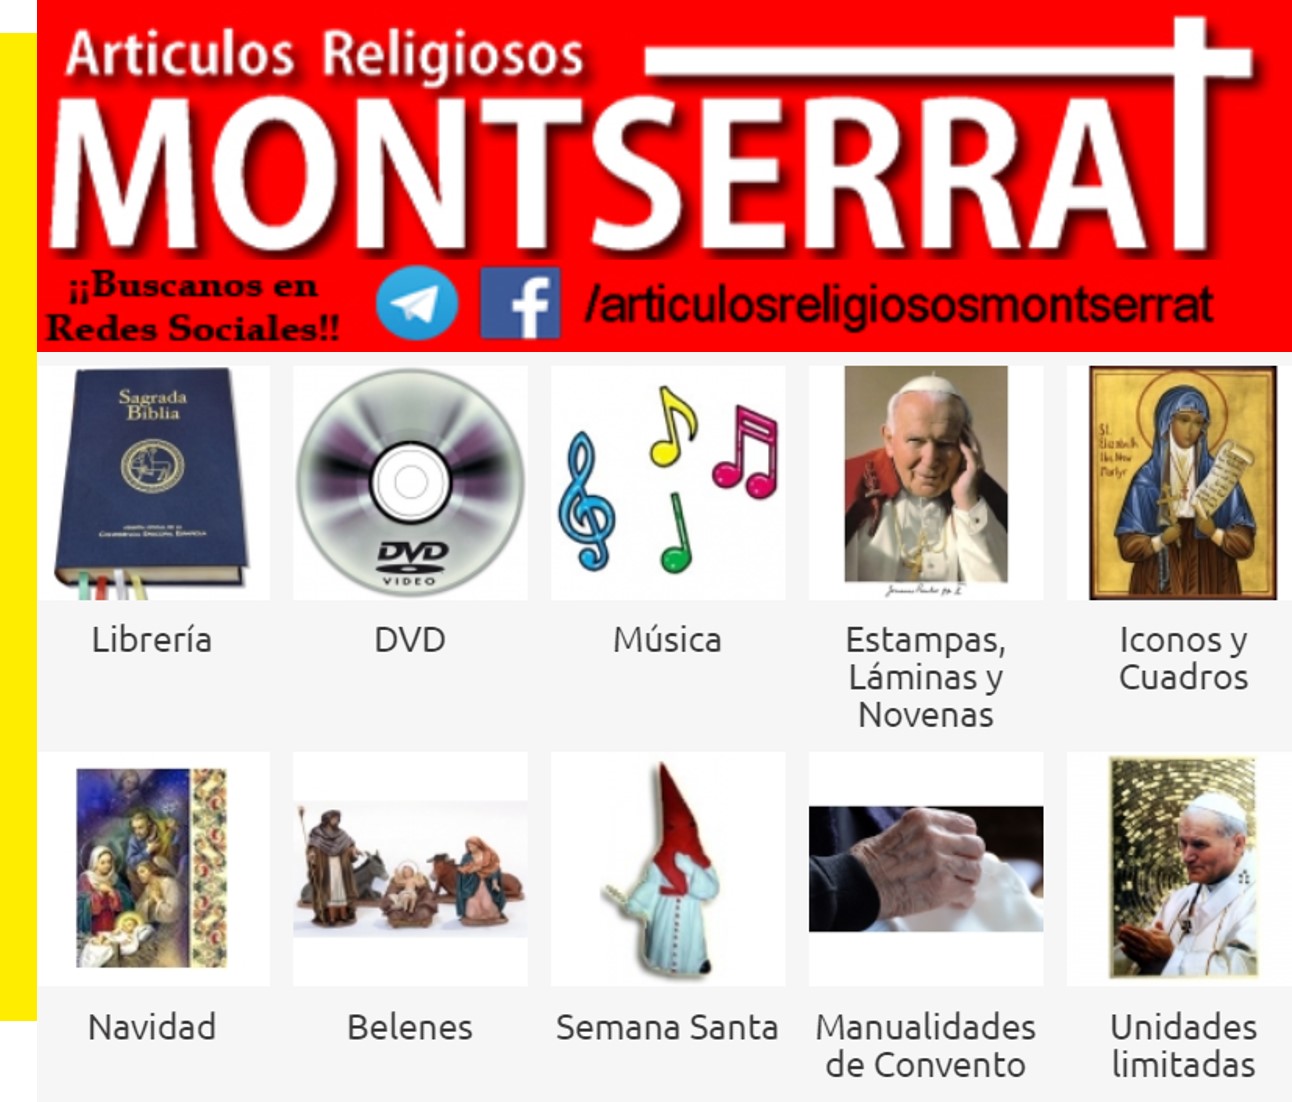 Images Artículos Religiosos Montserrat